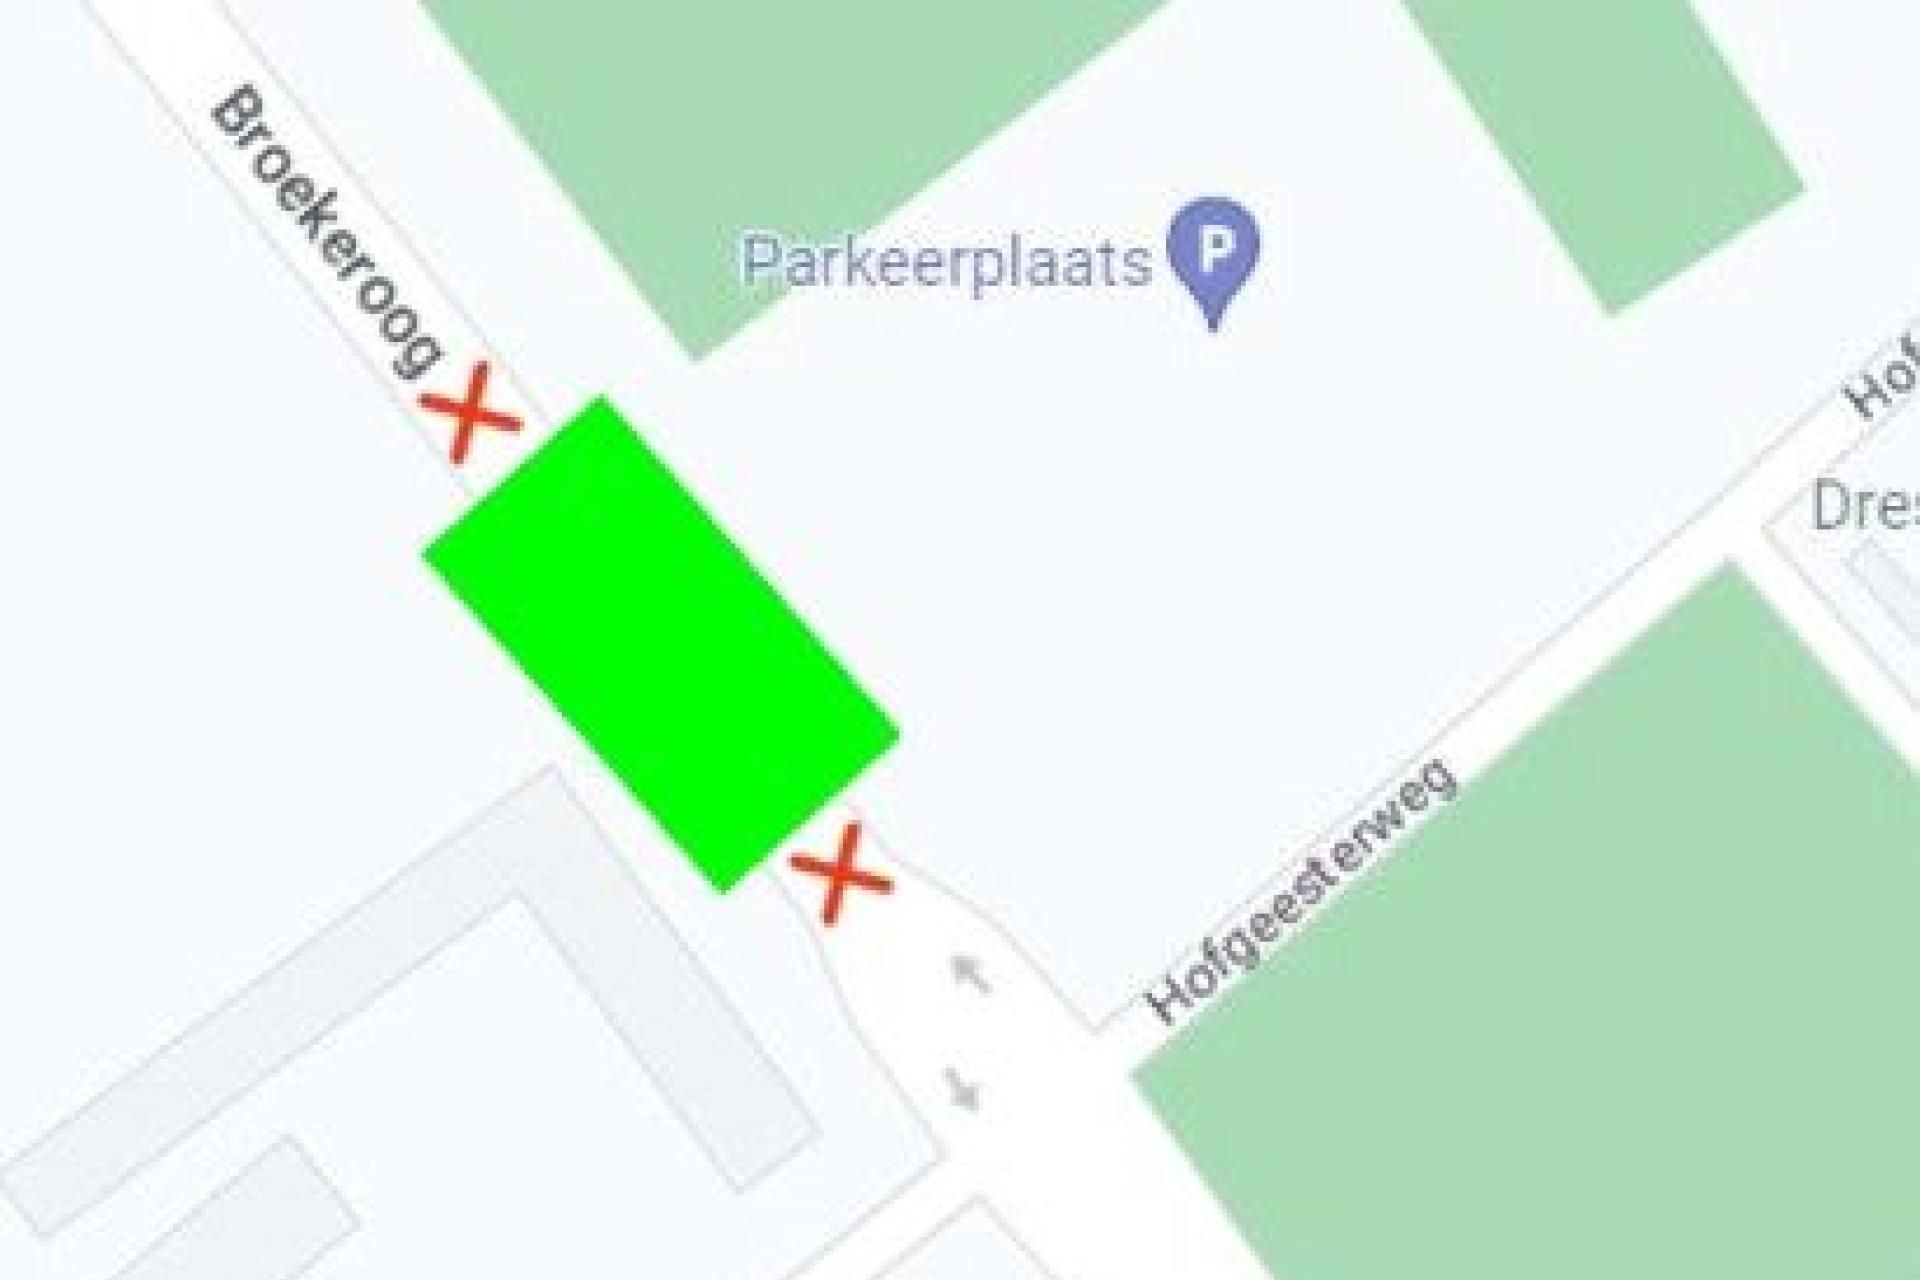 kaartje met de plek van de afsluiting ter hoogte van de parkeerplaats bij kruising hofgeesterweg